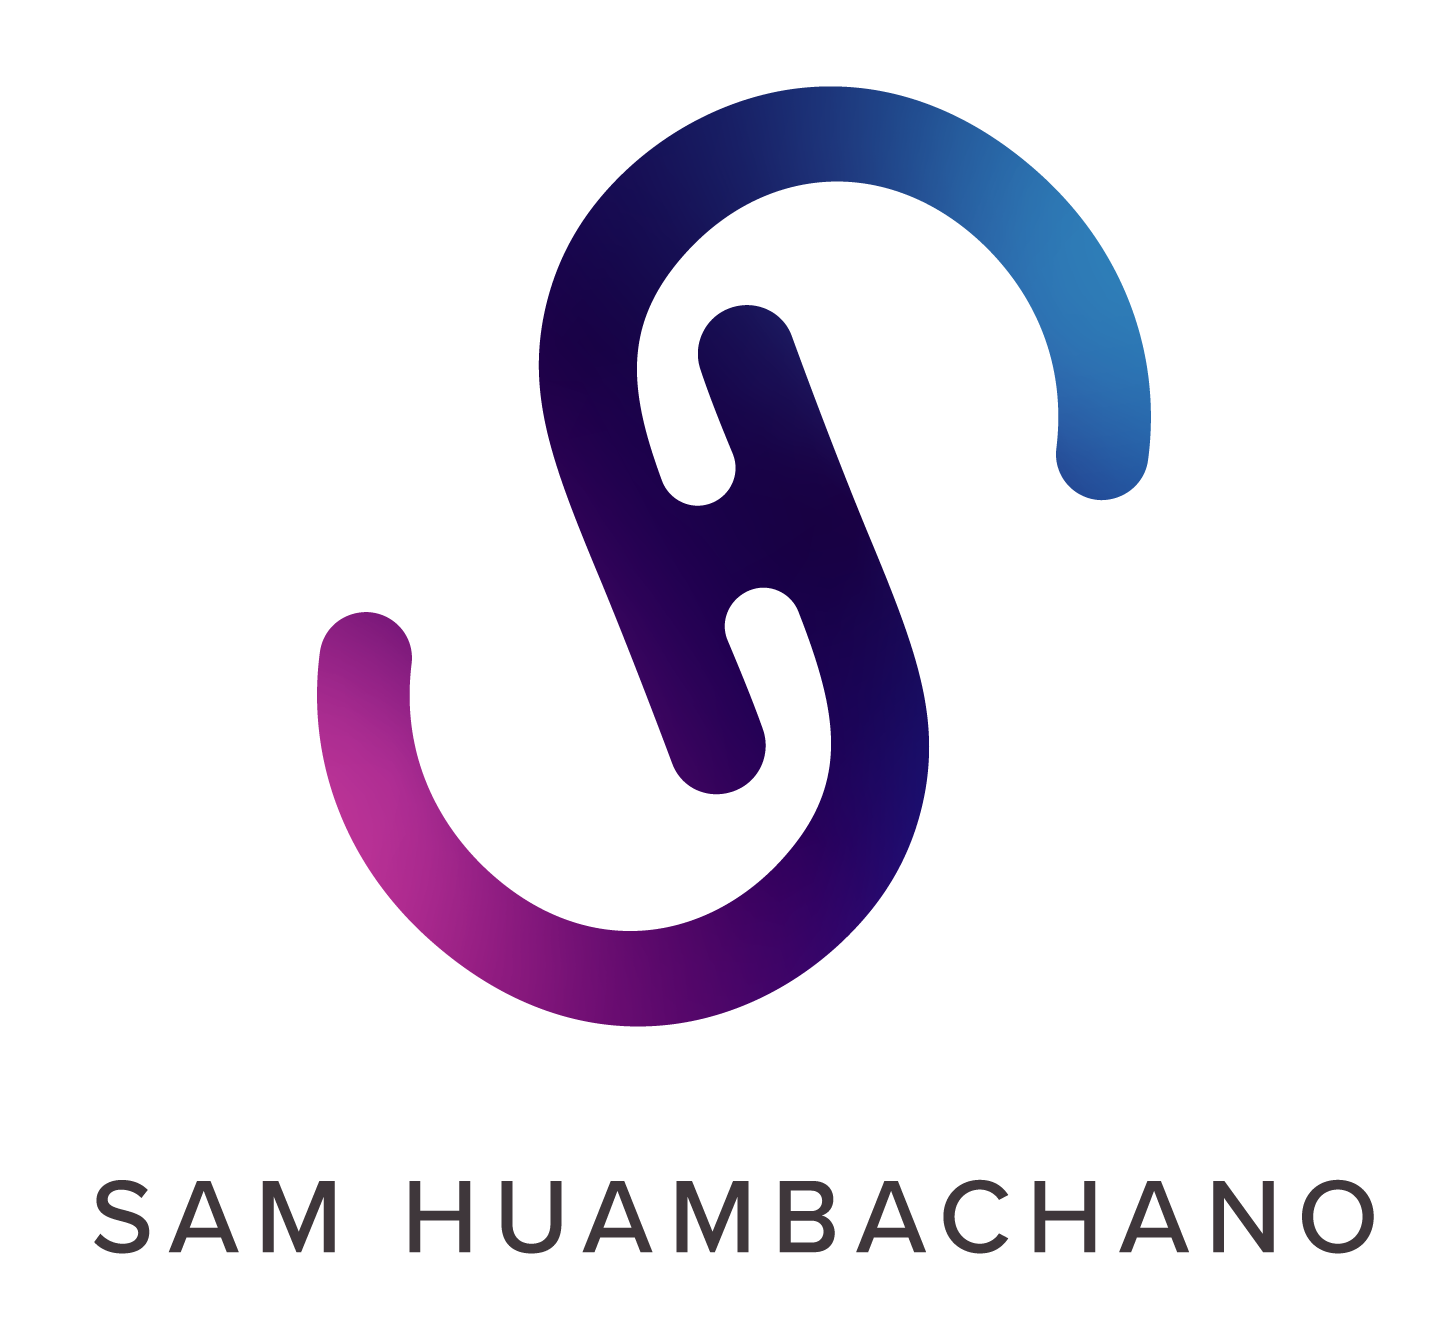 Sam Huambachano